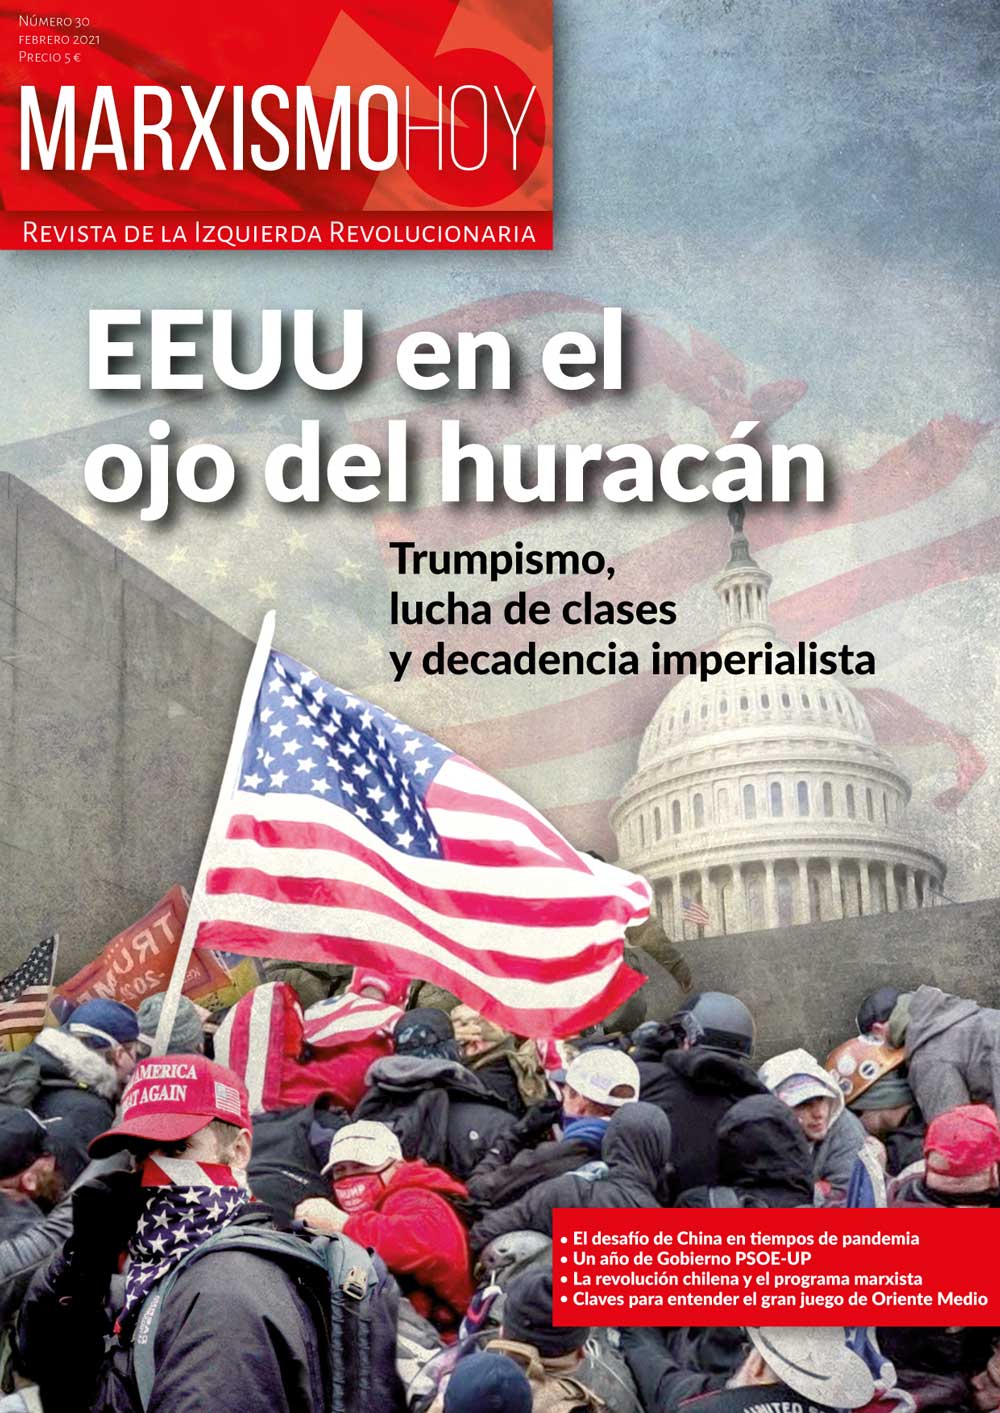 Izquierda Revolucionaria - Marxismo Hoy nº 30. EEUU en el ojo del huracán.